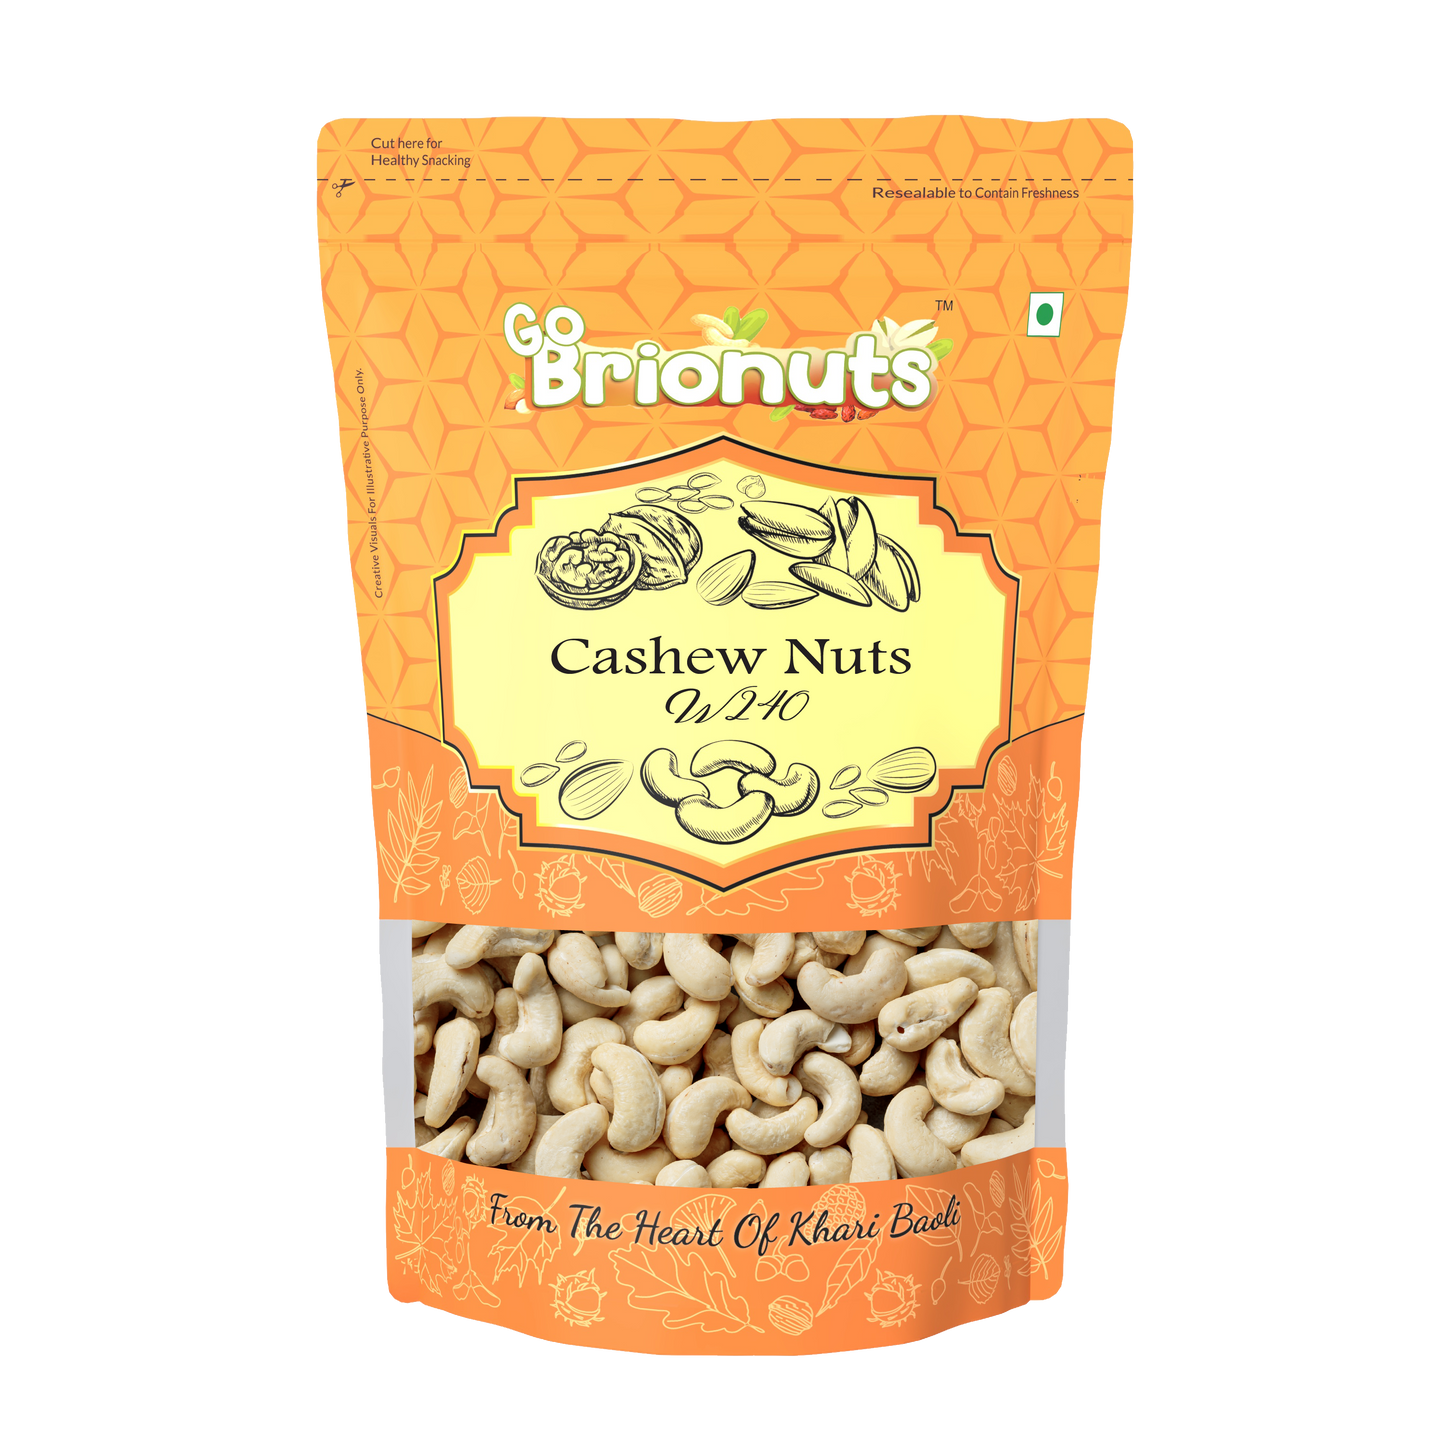 Cashew Nuts W240 250gms